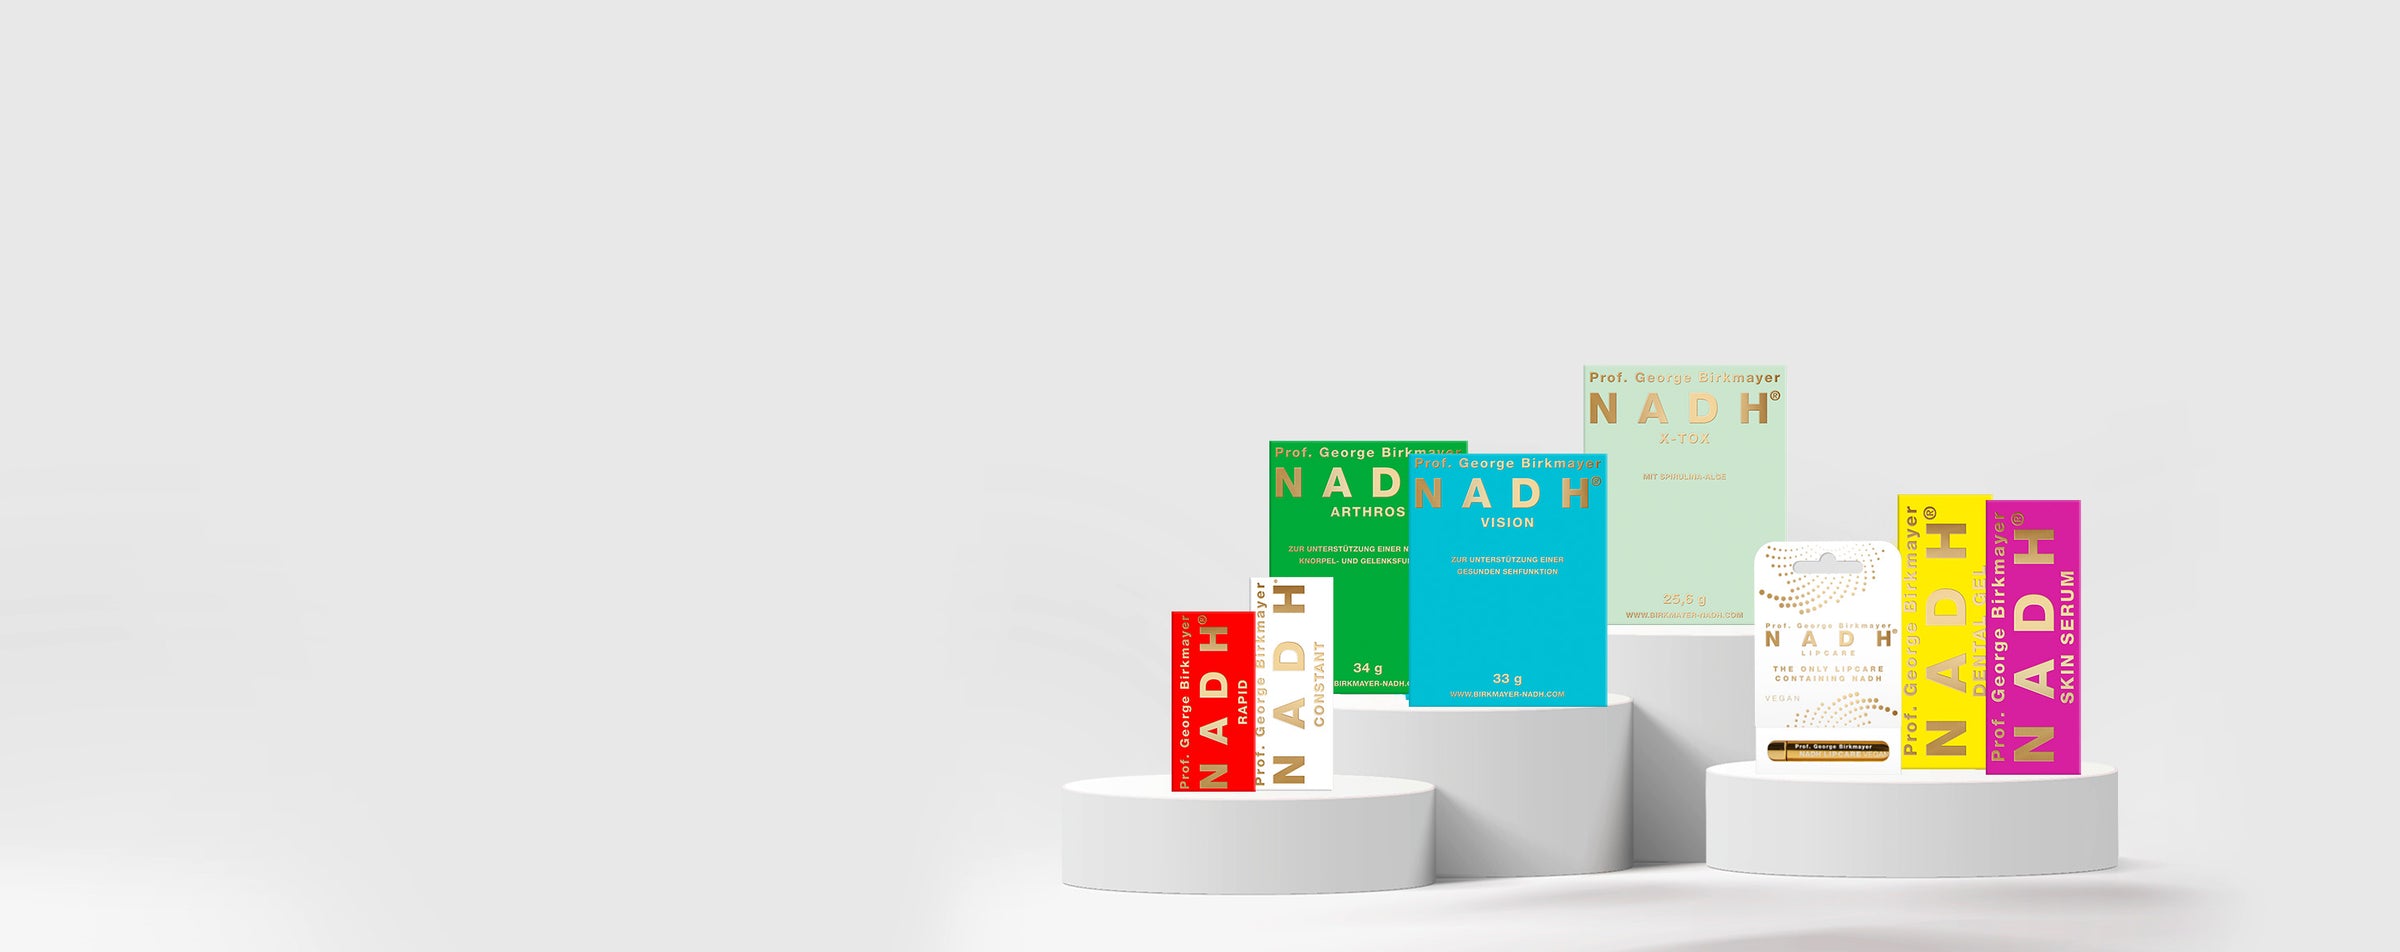 Varios productos NADH en pedestales blancos